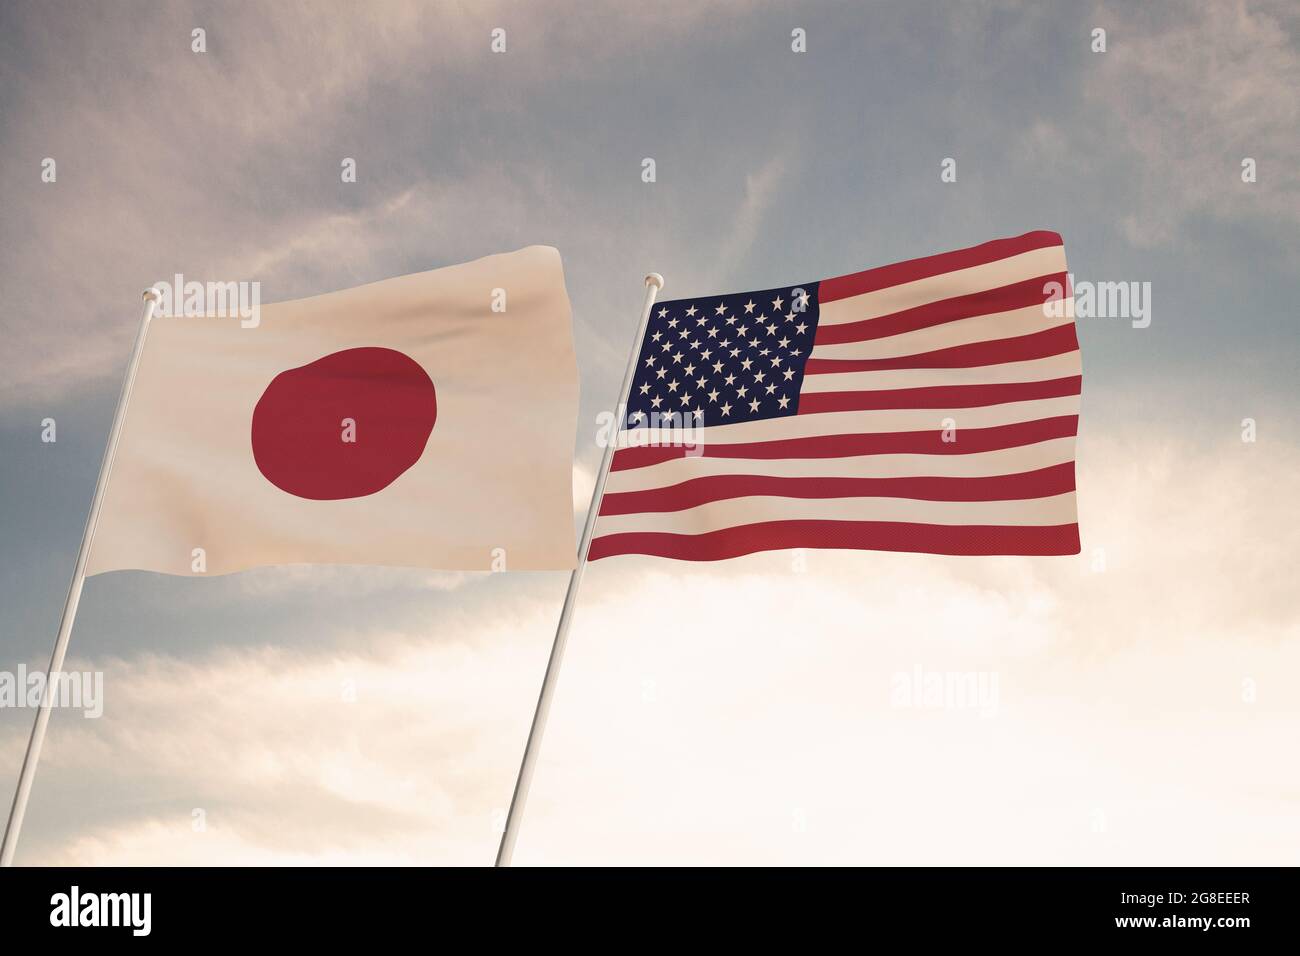 Flaggen von Japan und den USA winken mit blauem Himmel Hintergrund, 3D-Wiedergabe der Vereinigten Staaten von Amerika, der Kommunistischen Partei Chinas (KPCh). Stockfoto